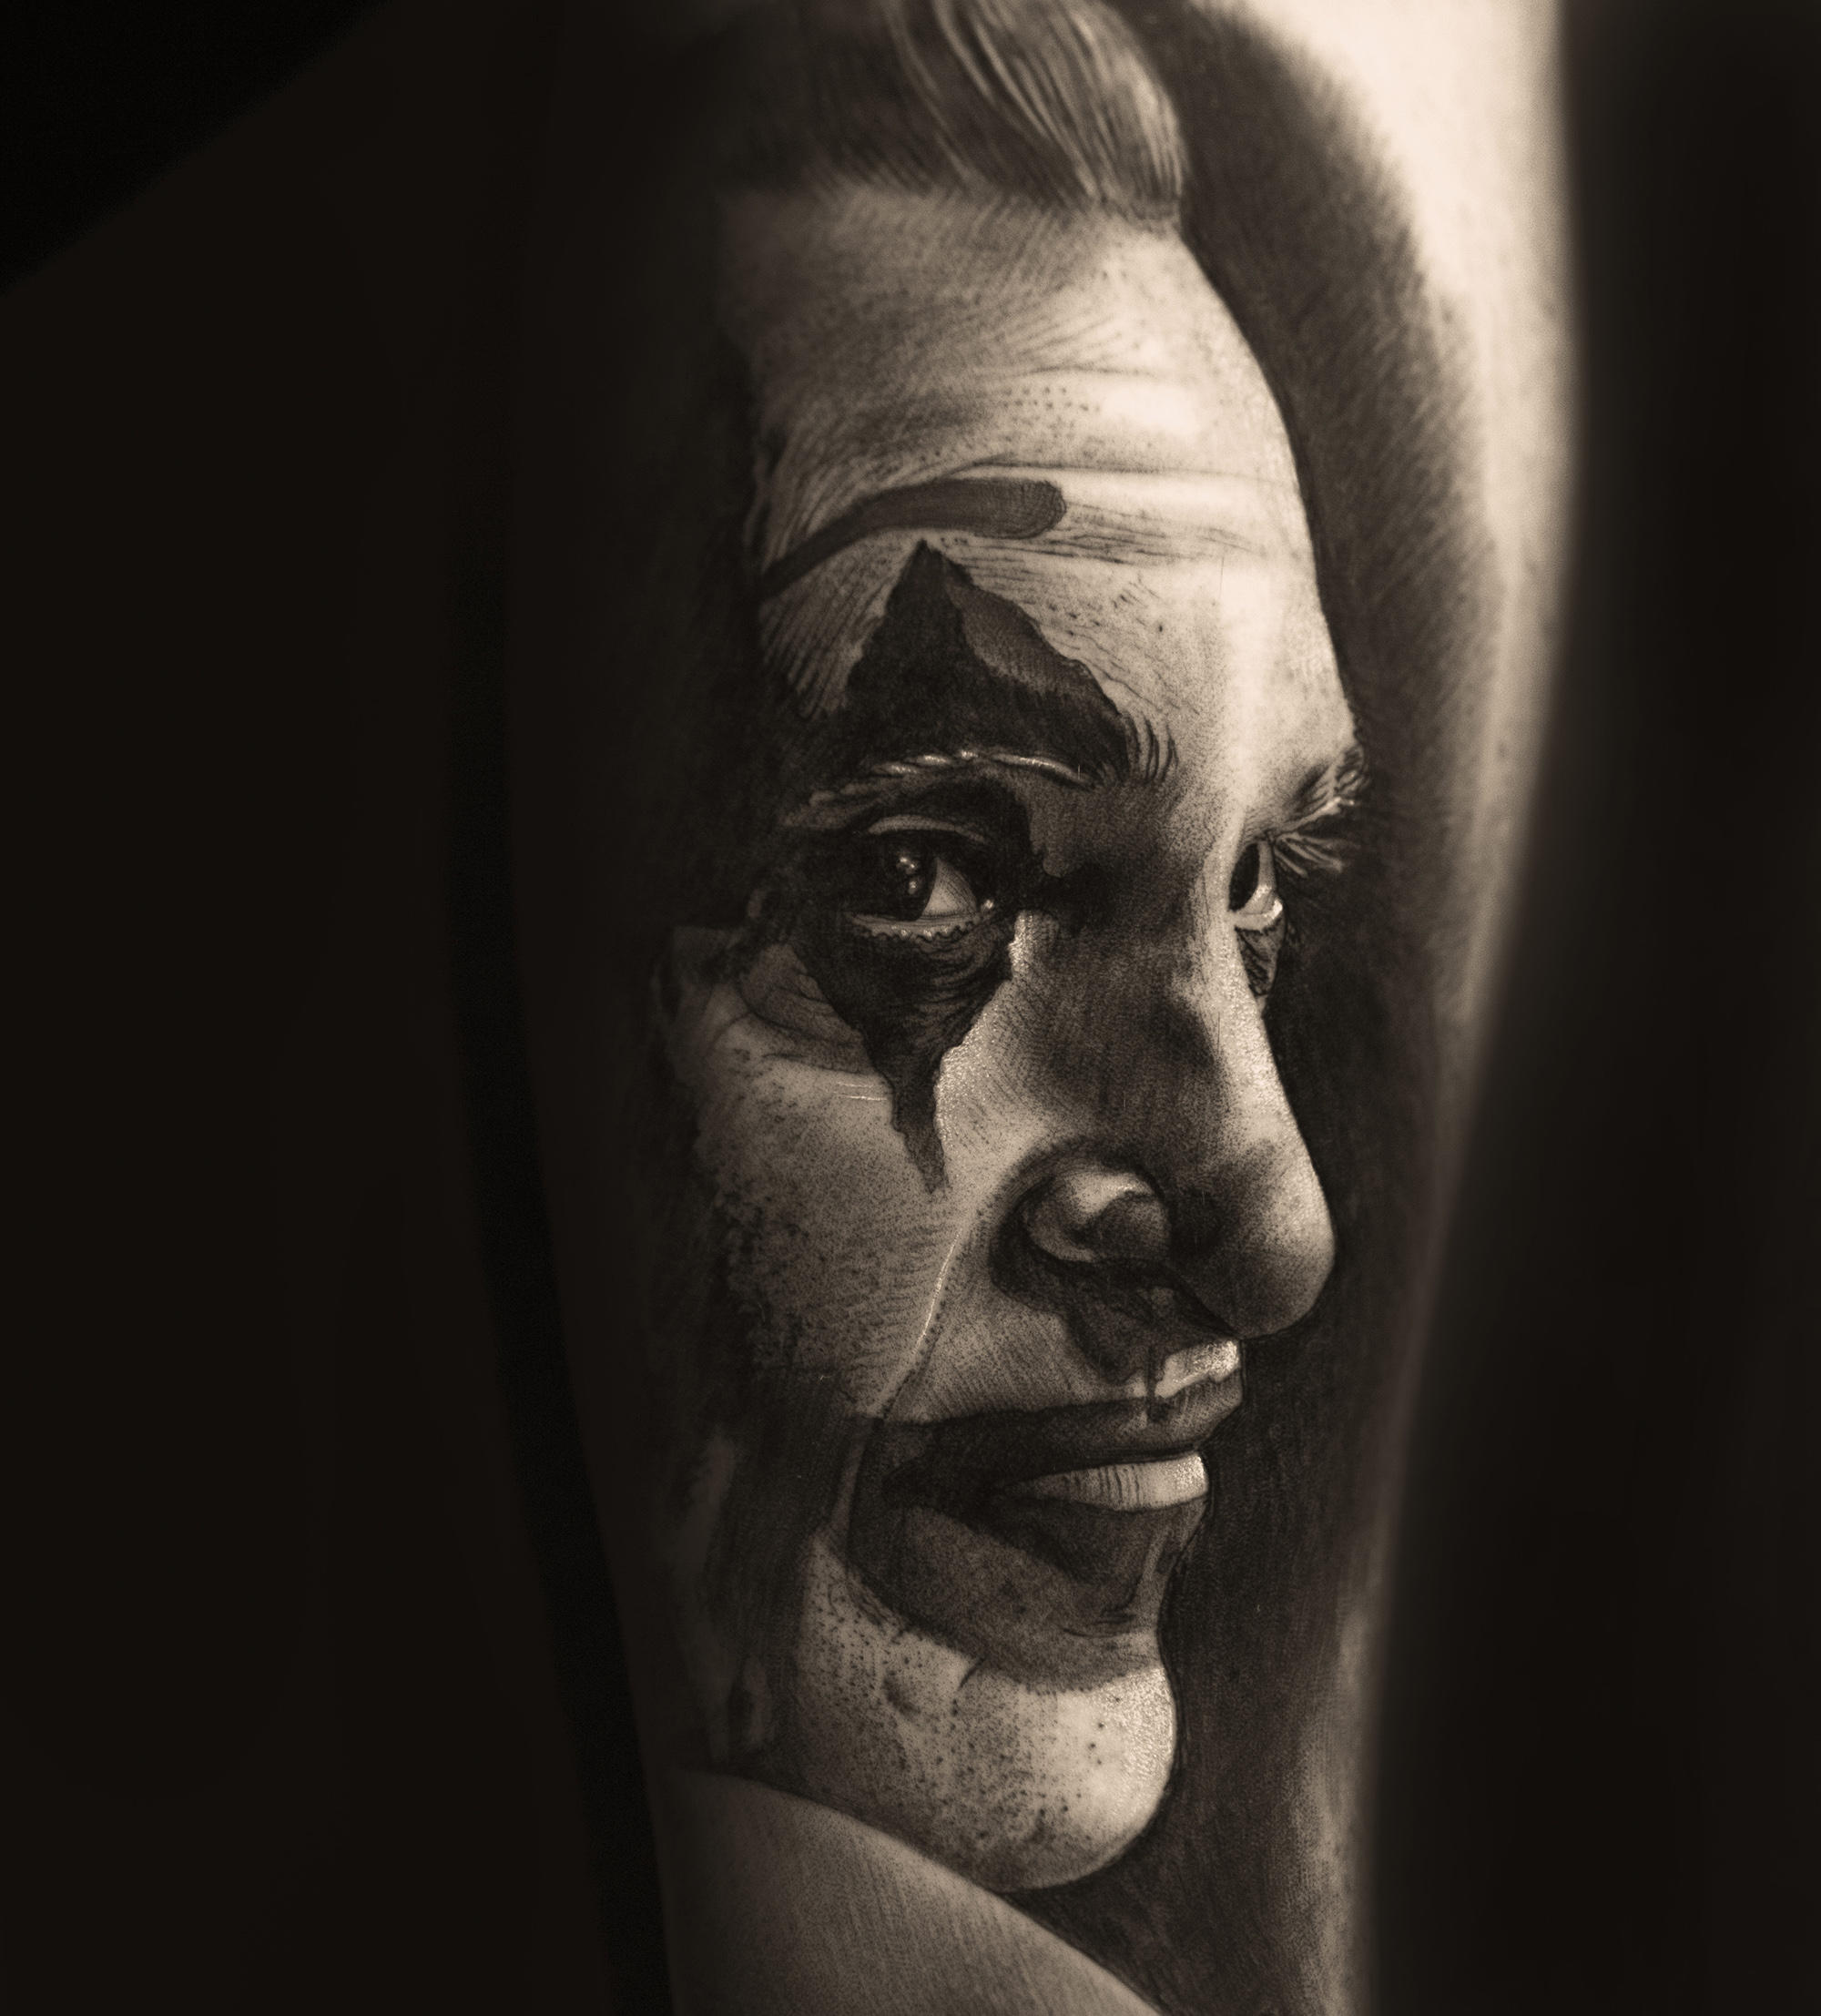 joker (joaquim phoenix) portrait tattoo in black and grey by Denis "Tidan" Torikashvili 